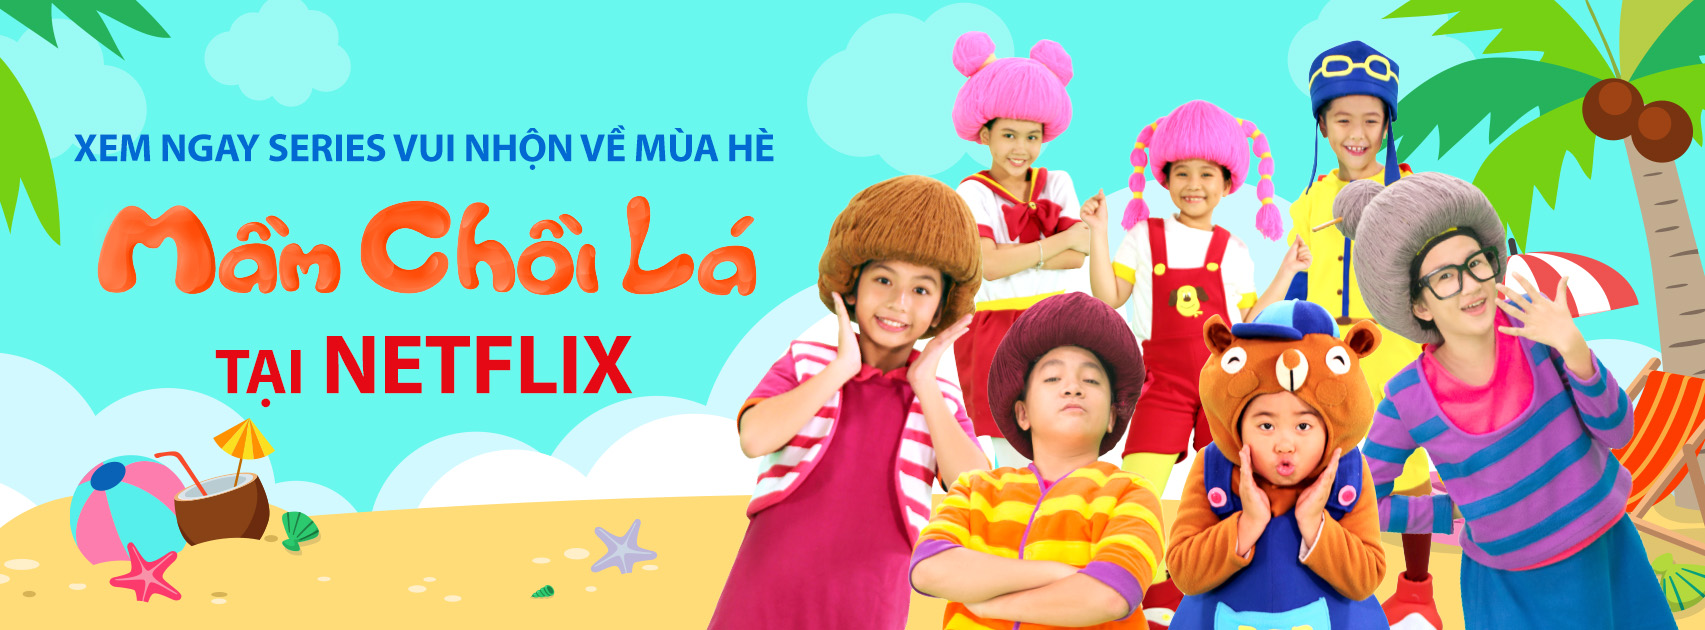 Series Âm Nhạc Mầm Chồi Lá trên Netflix Việt Nam